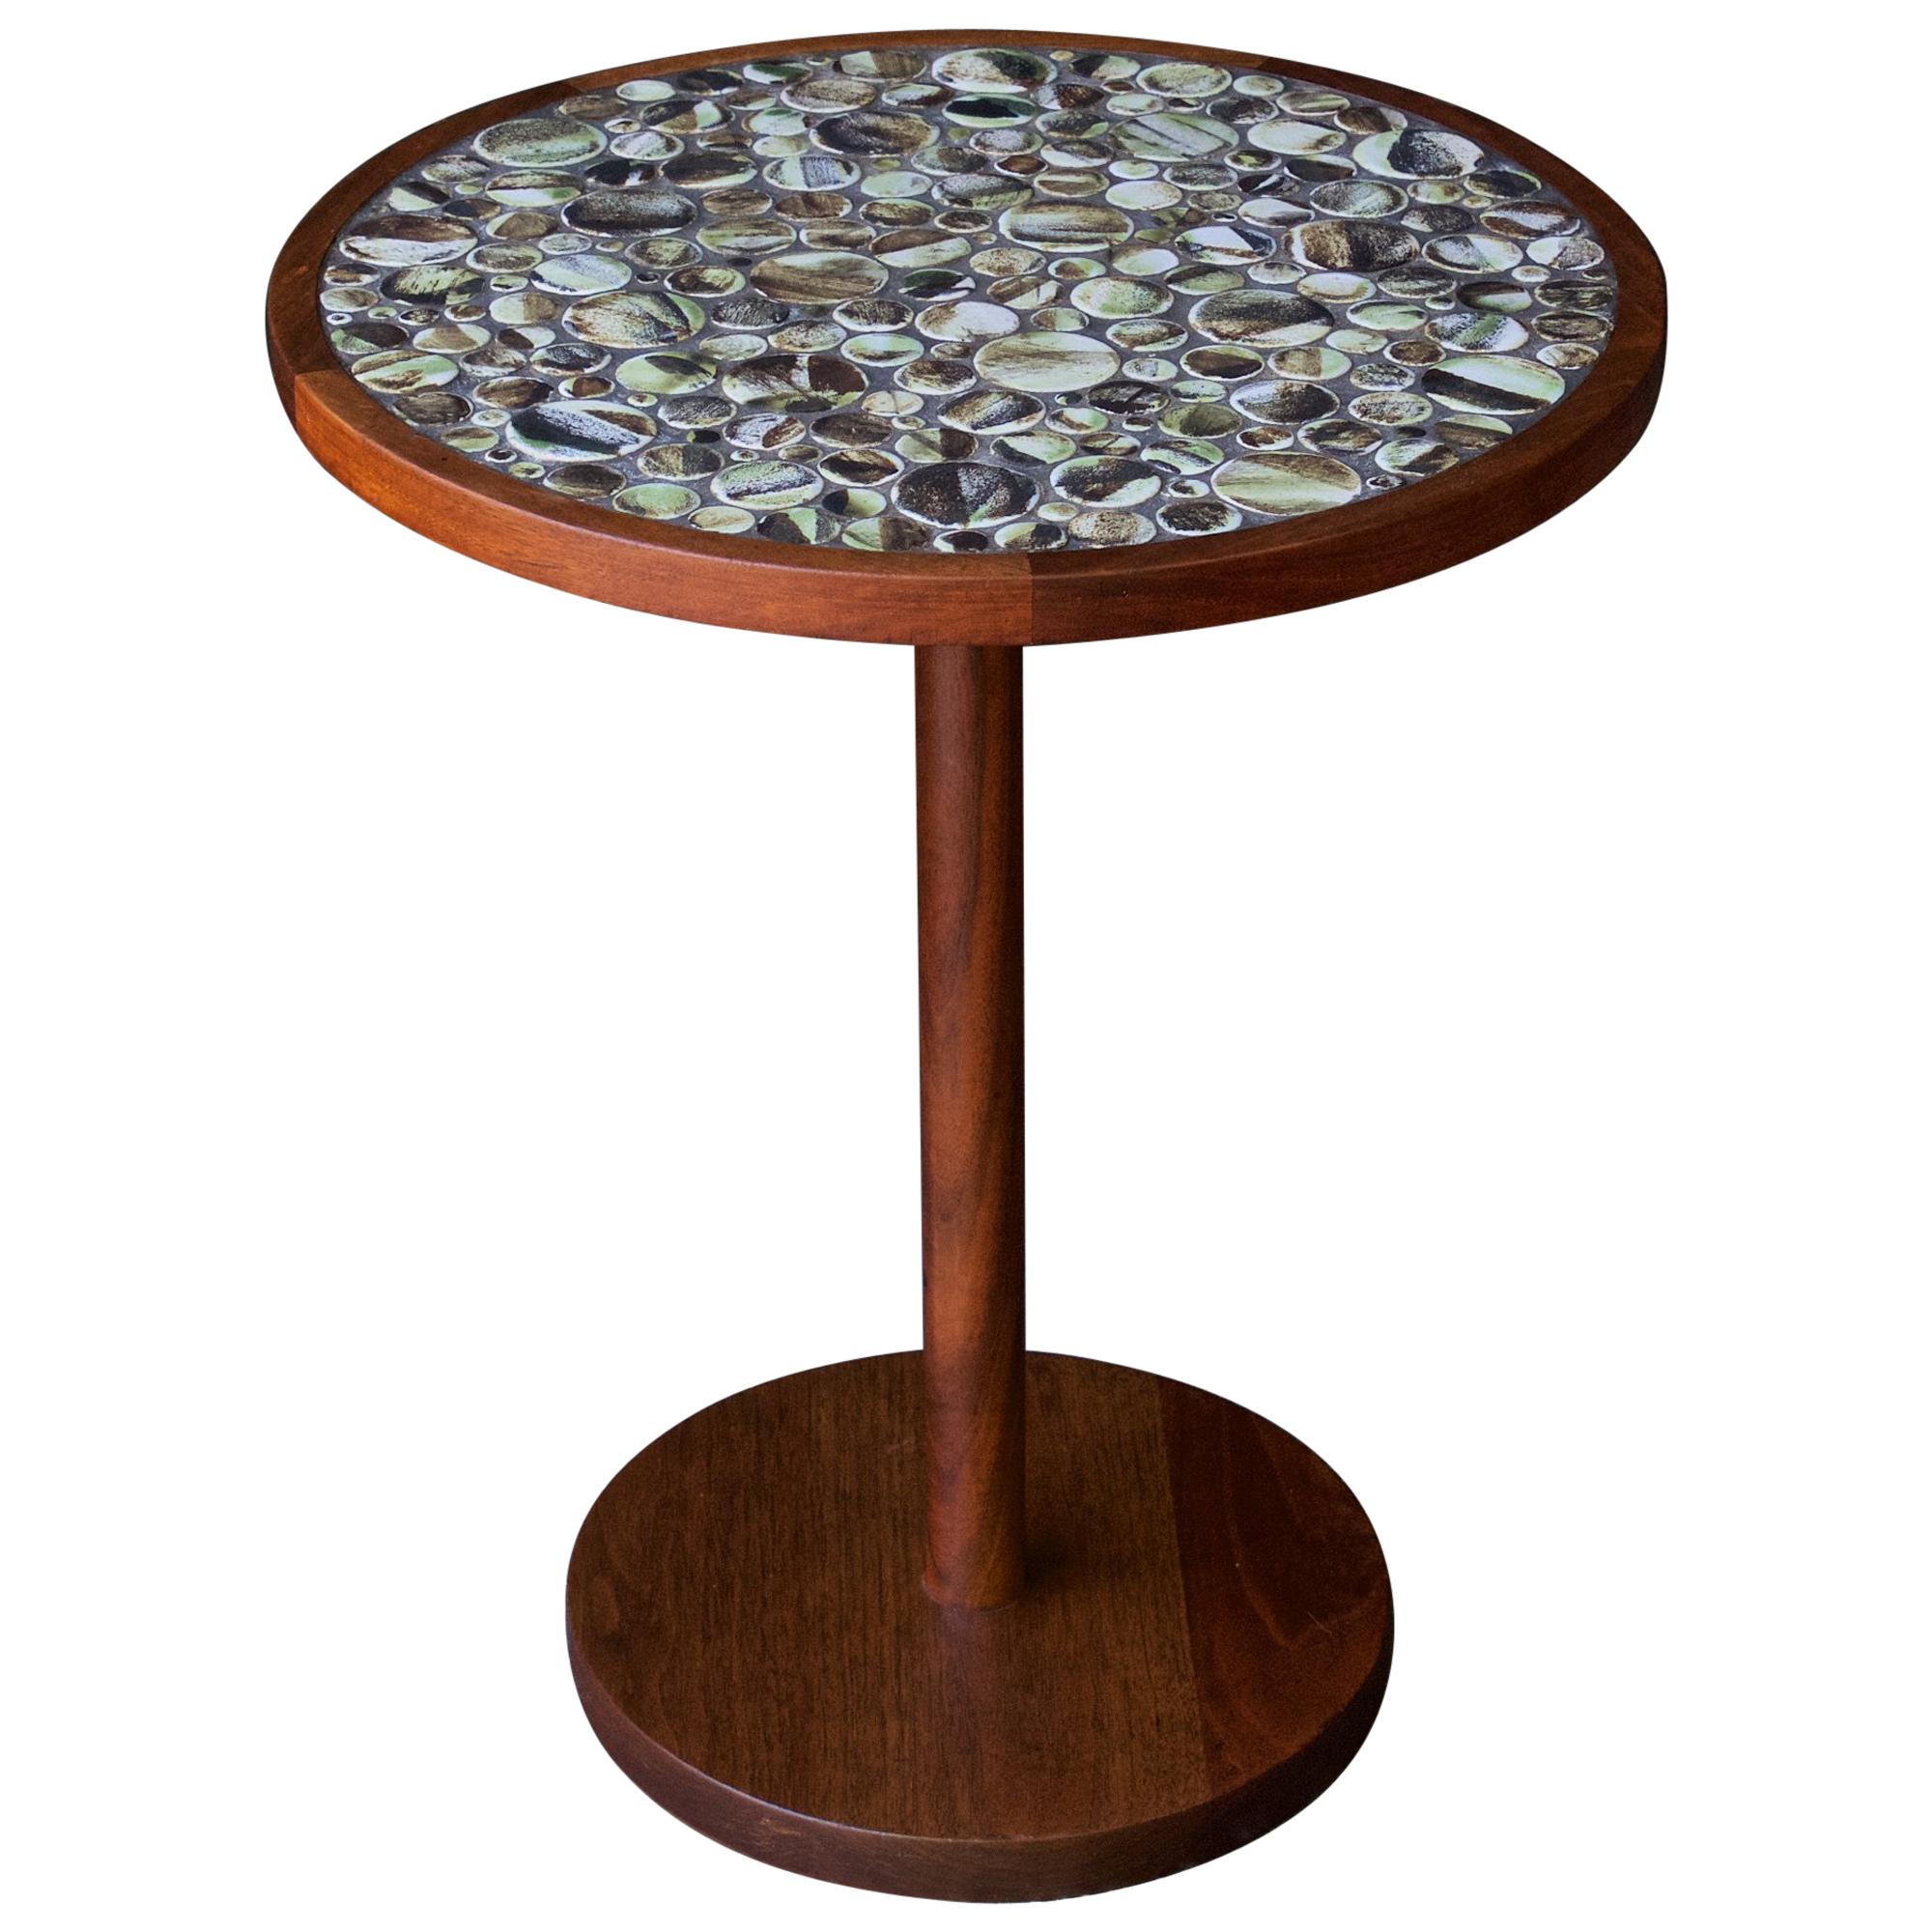 Martz-Tisch Nussbaum, pinselglasiert, runde Fliesen, CabinModern Studio Craft, 1960er Jahre